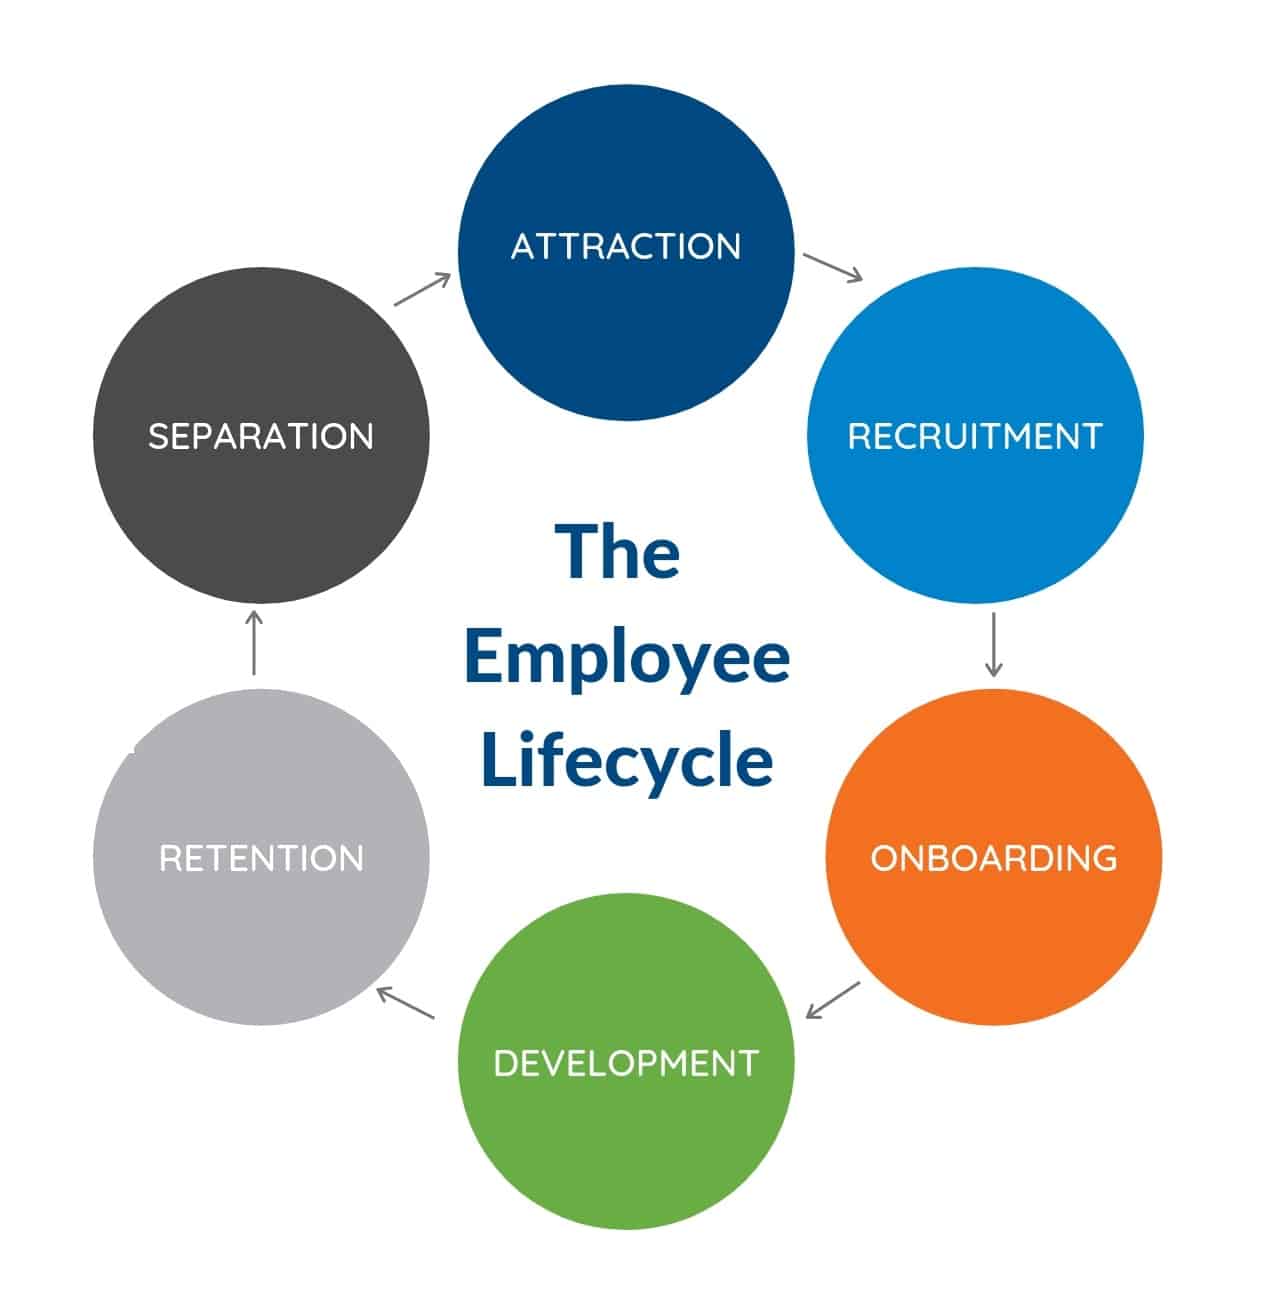 The employee lifecycle